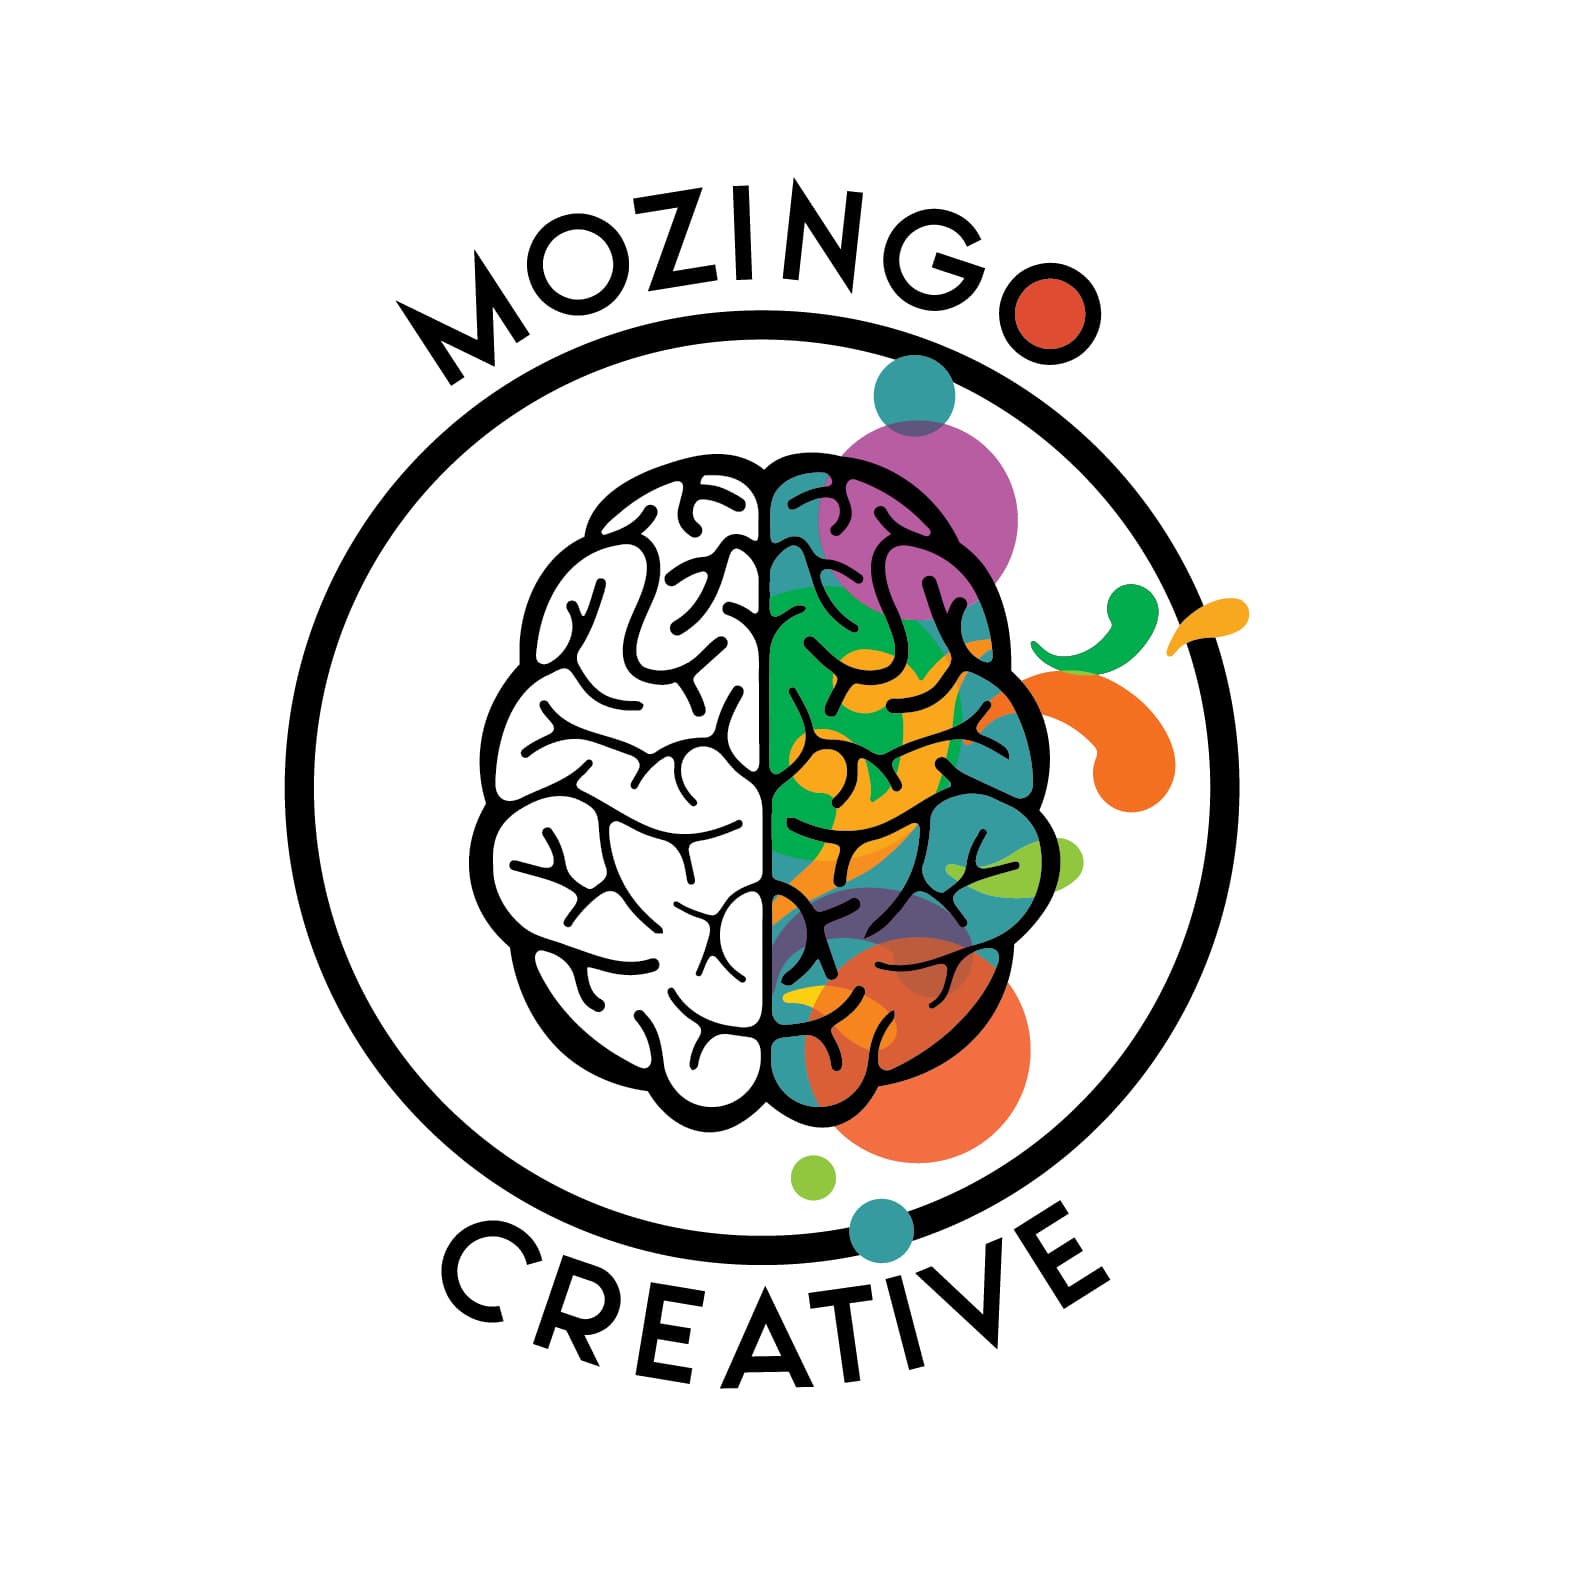 Mozingo Creative